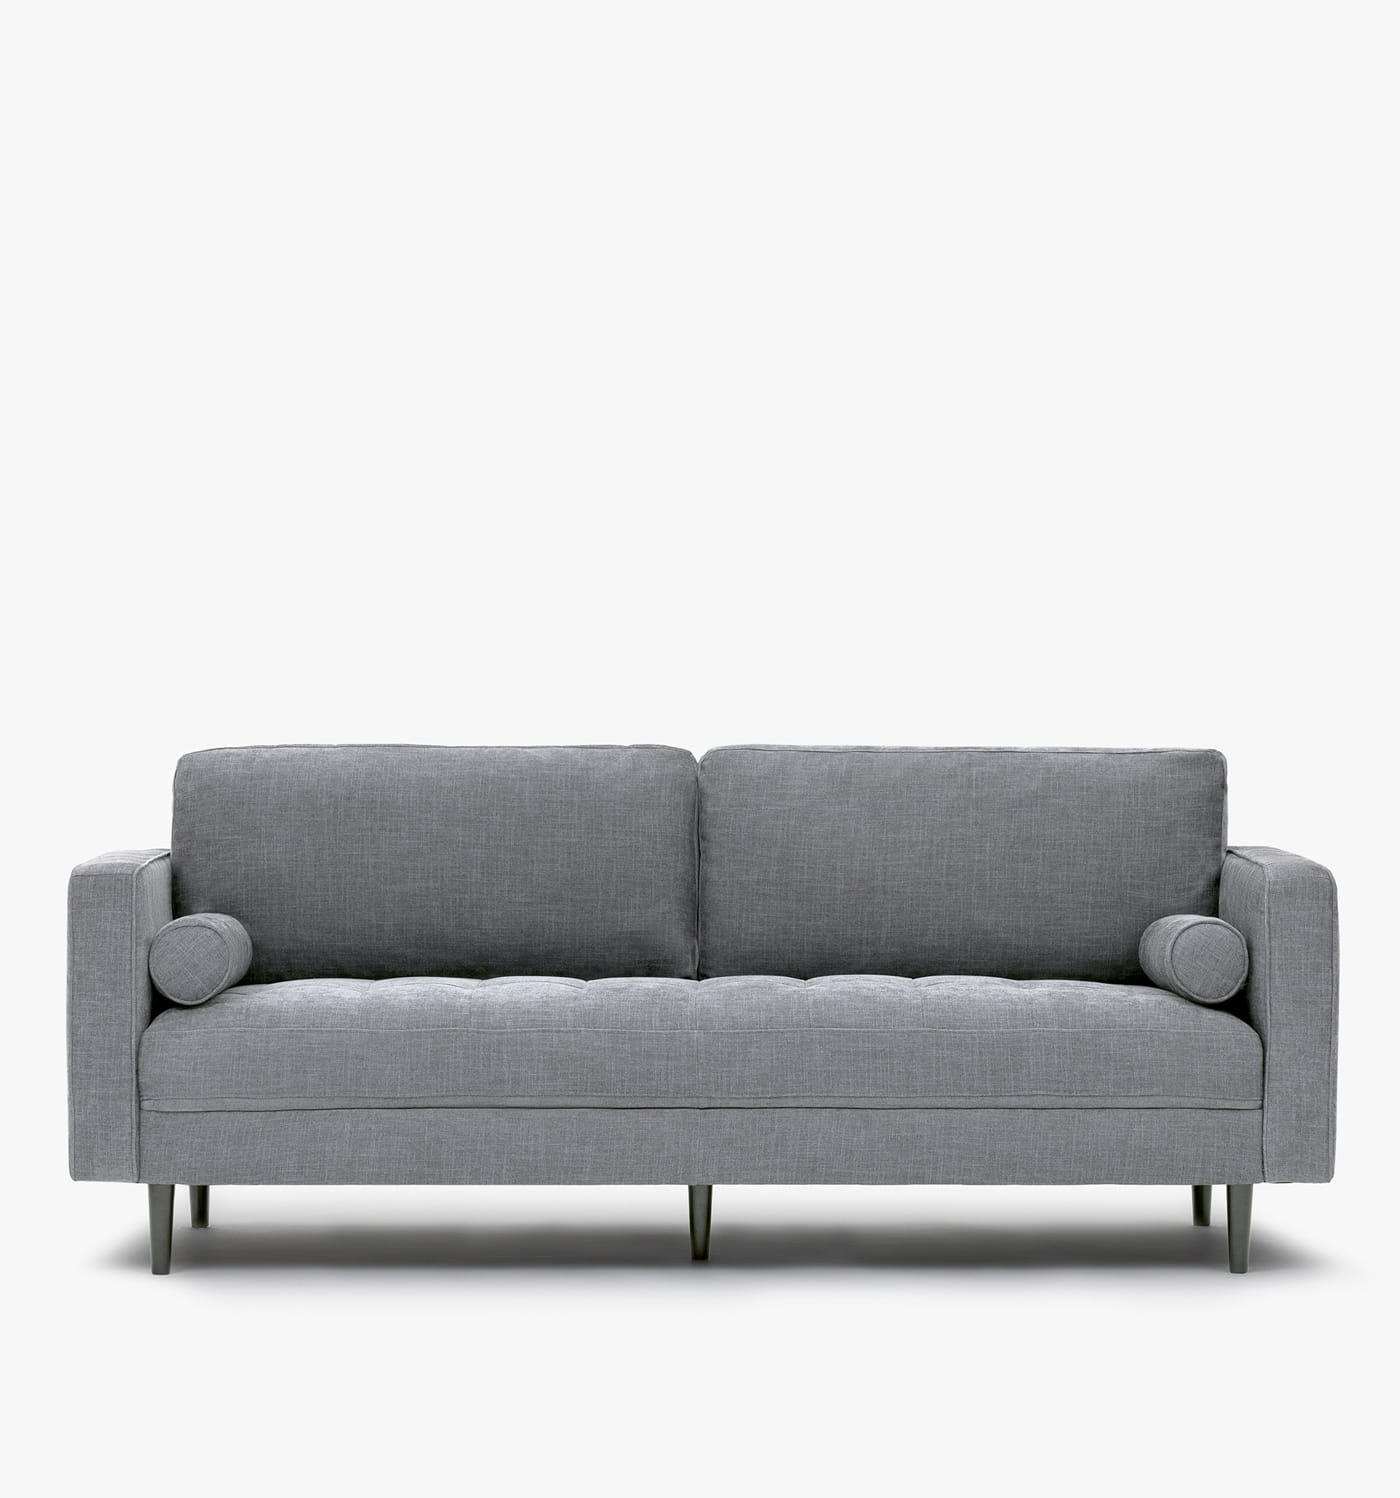 The Noa Soho Sofa - Grey